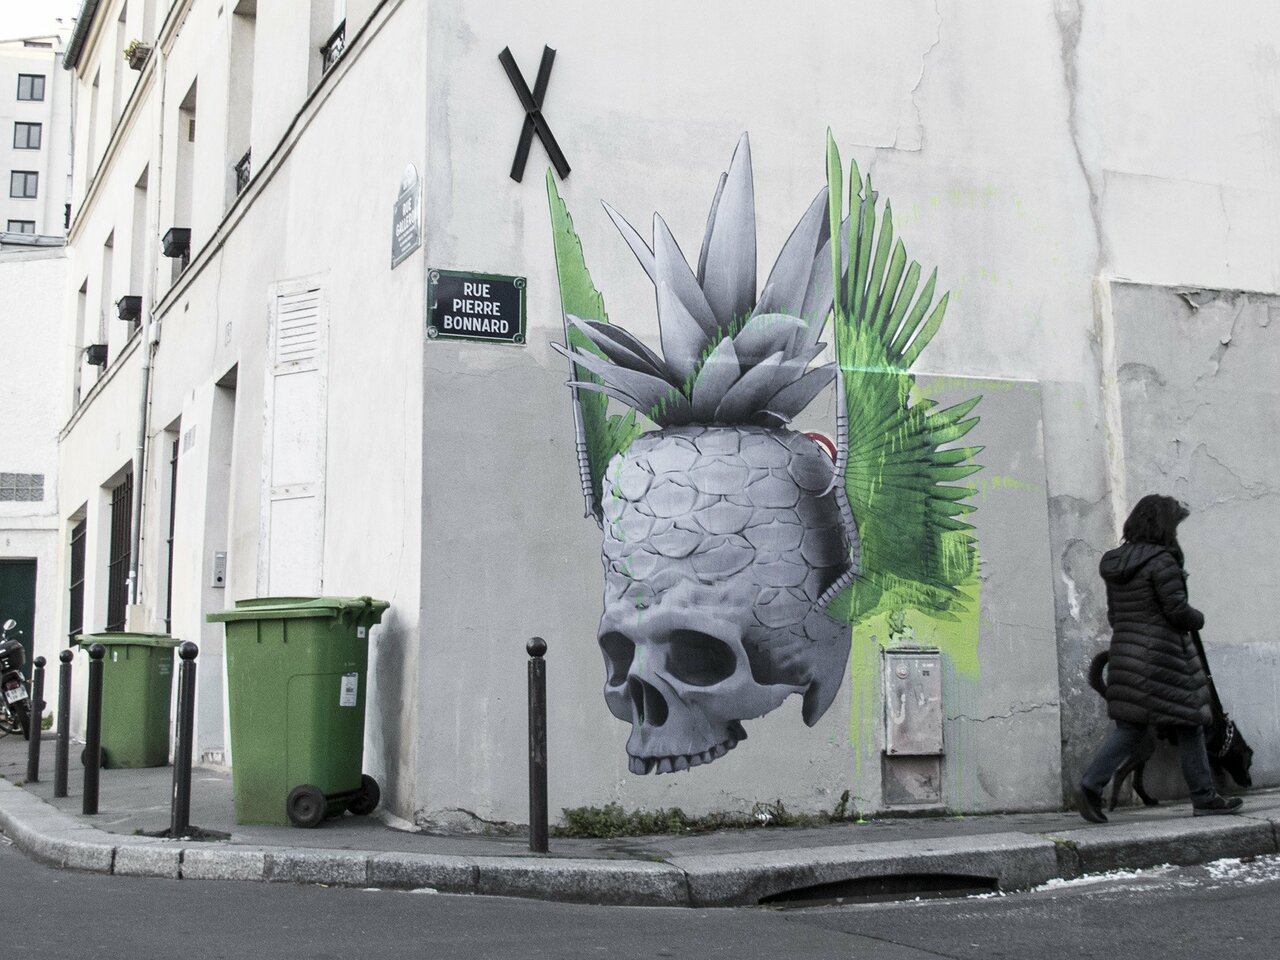 “Fly On, Little Wing” & “Swallow On Roses” by Ludo in Paris #streetart https://streetartnews.net/2016/12/fly-on-little-wing-swallow-on-roses-by-ludo-in-paris.html https://t.co/mTTugboPlJ